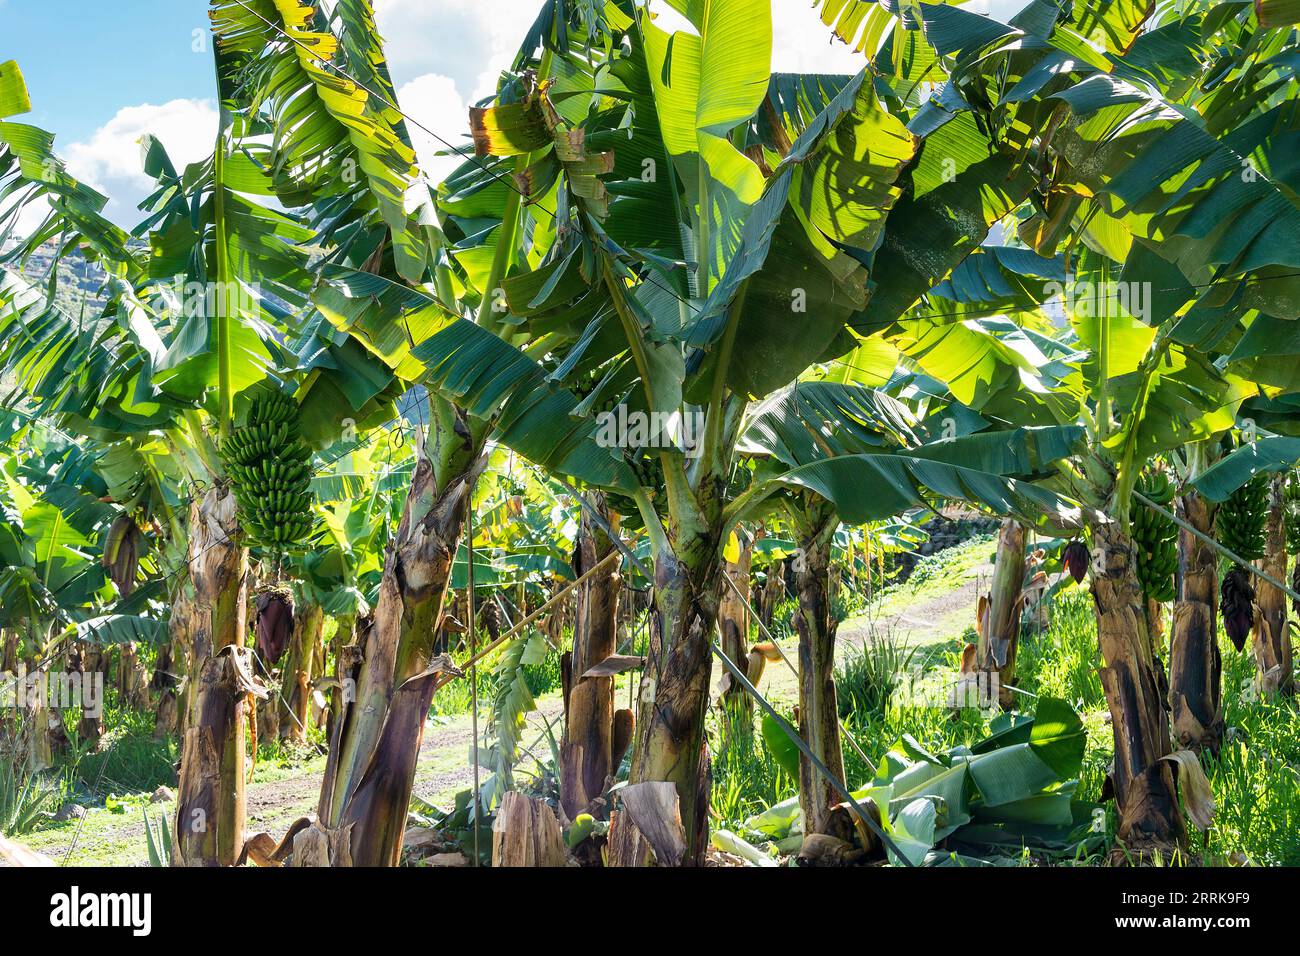 Tenerife, Canary Island, banana plantation Stock Photo